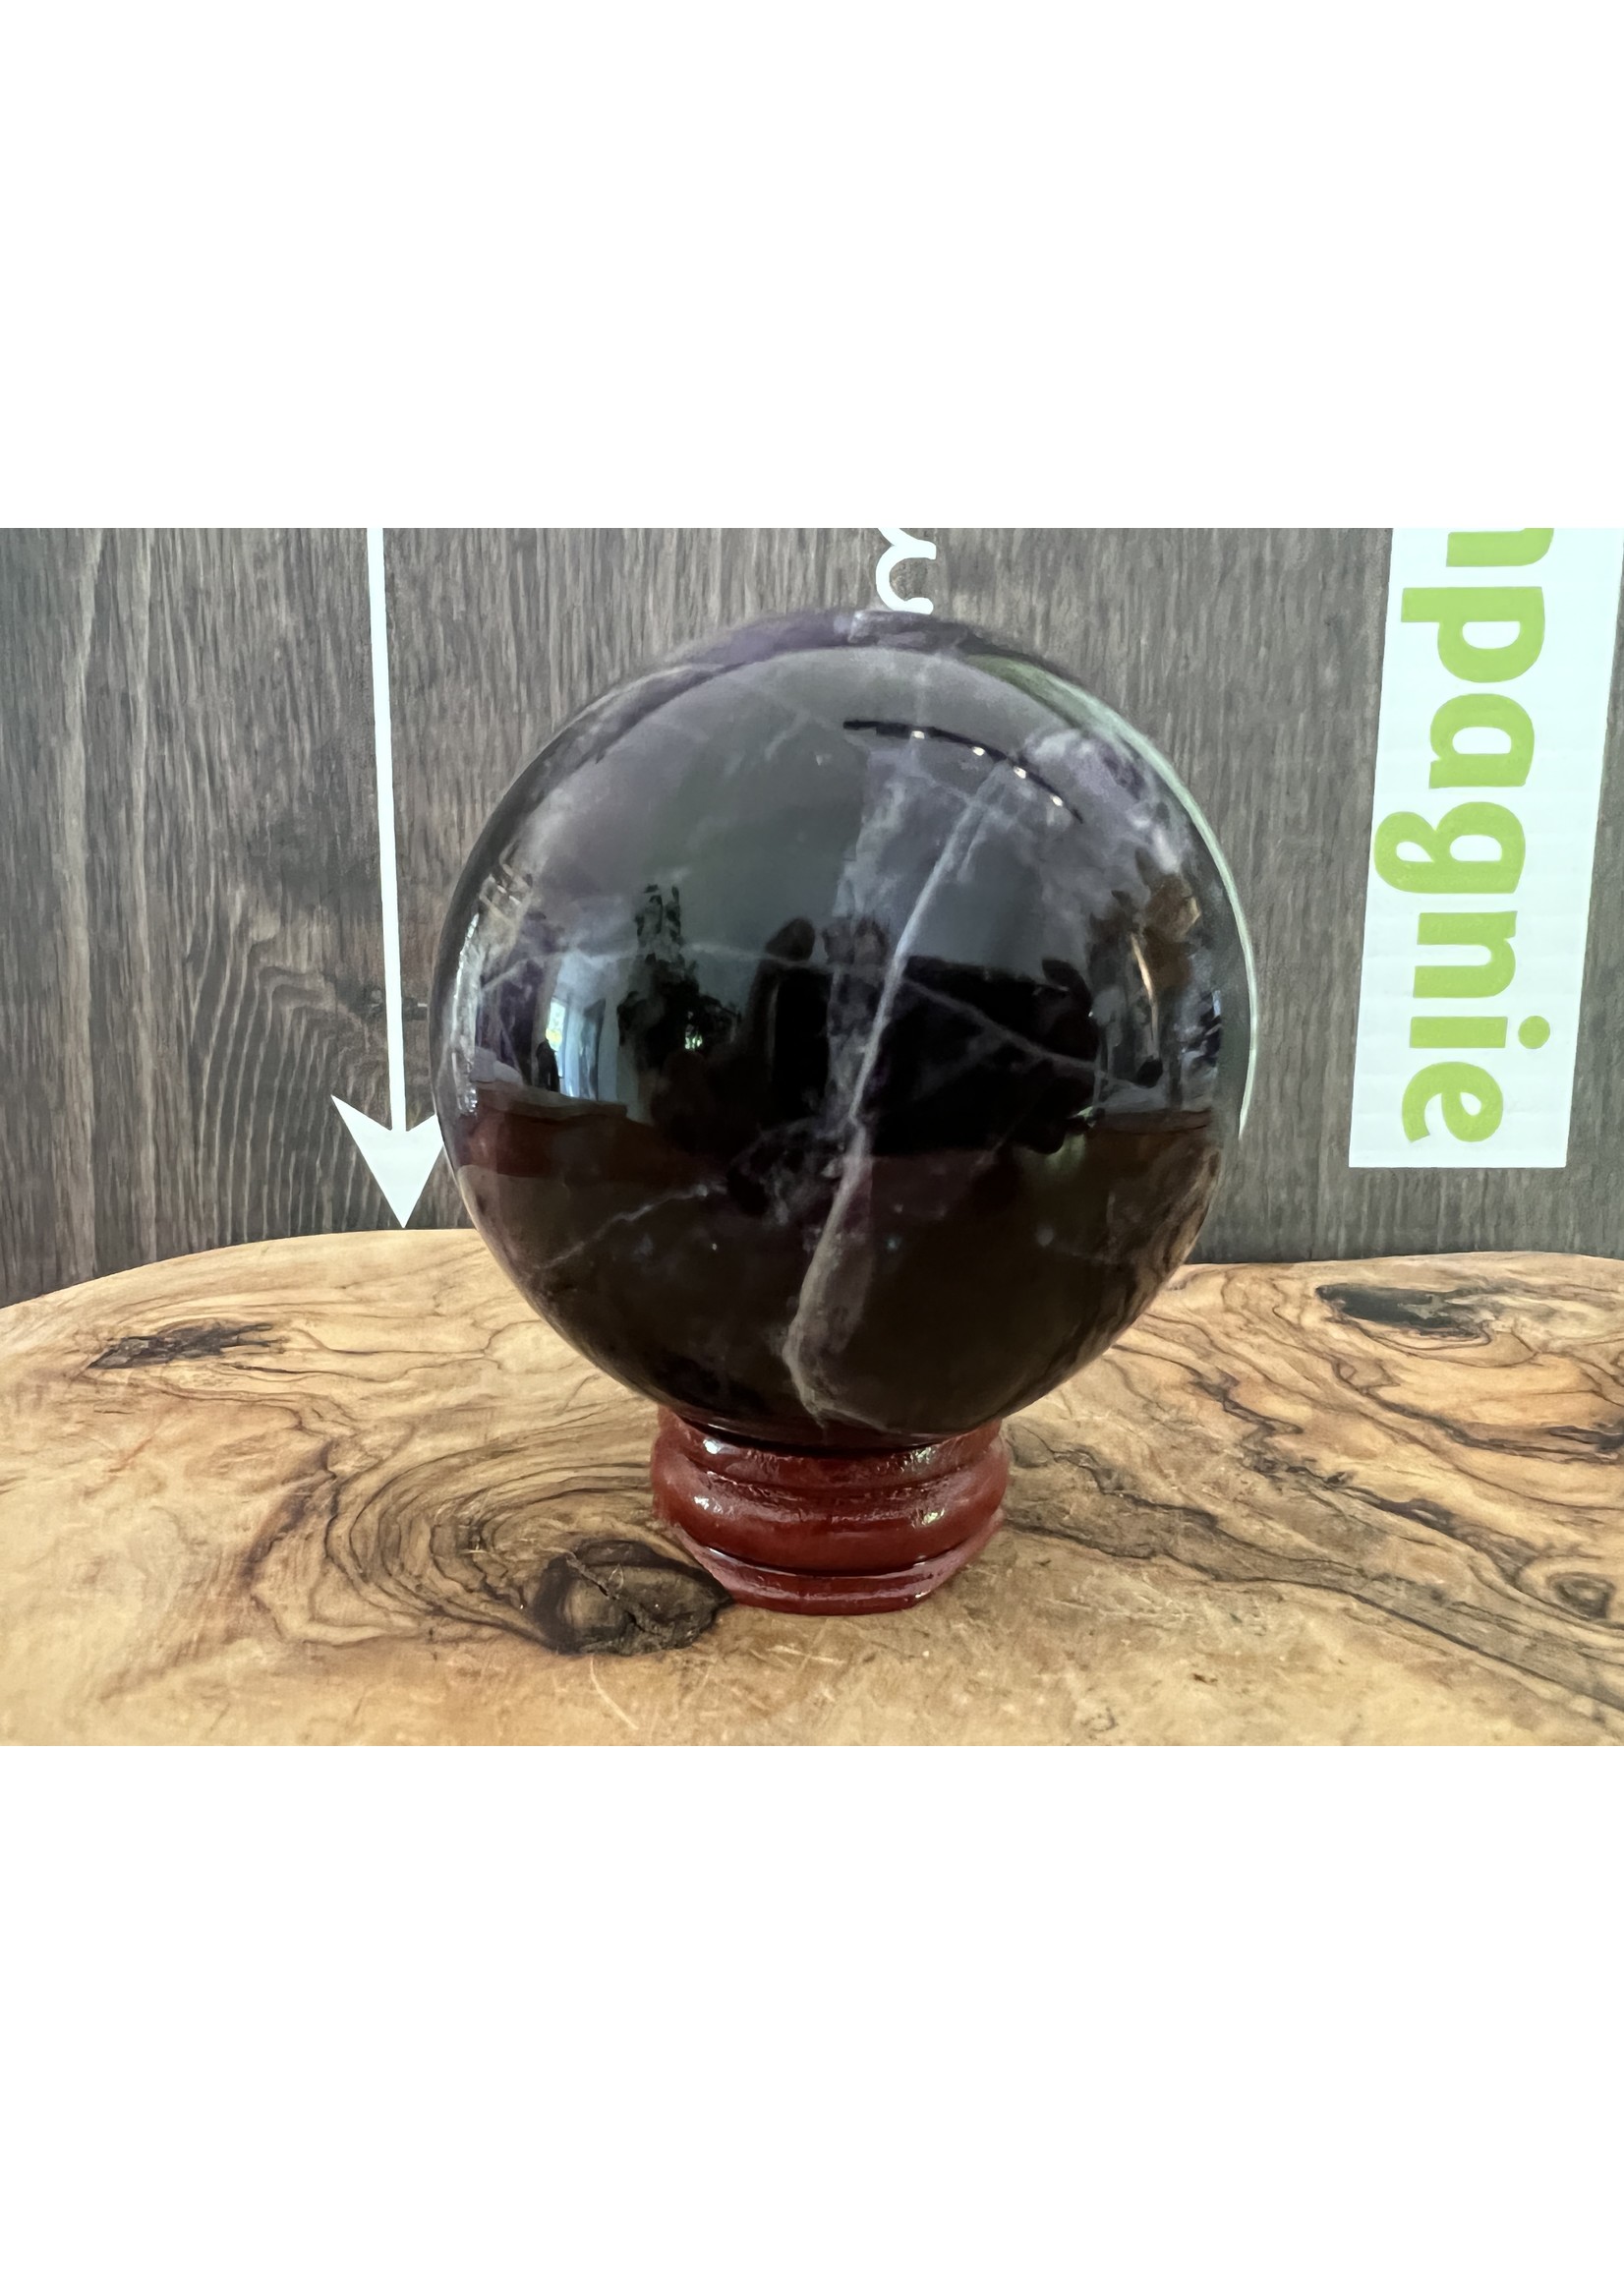 sphère fluorite violette de haute qualité, calme les agitations et la réflexion en favorisant le lâcher prise, absorbe les énergies nocives